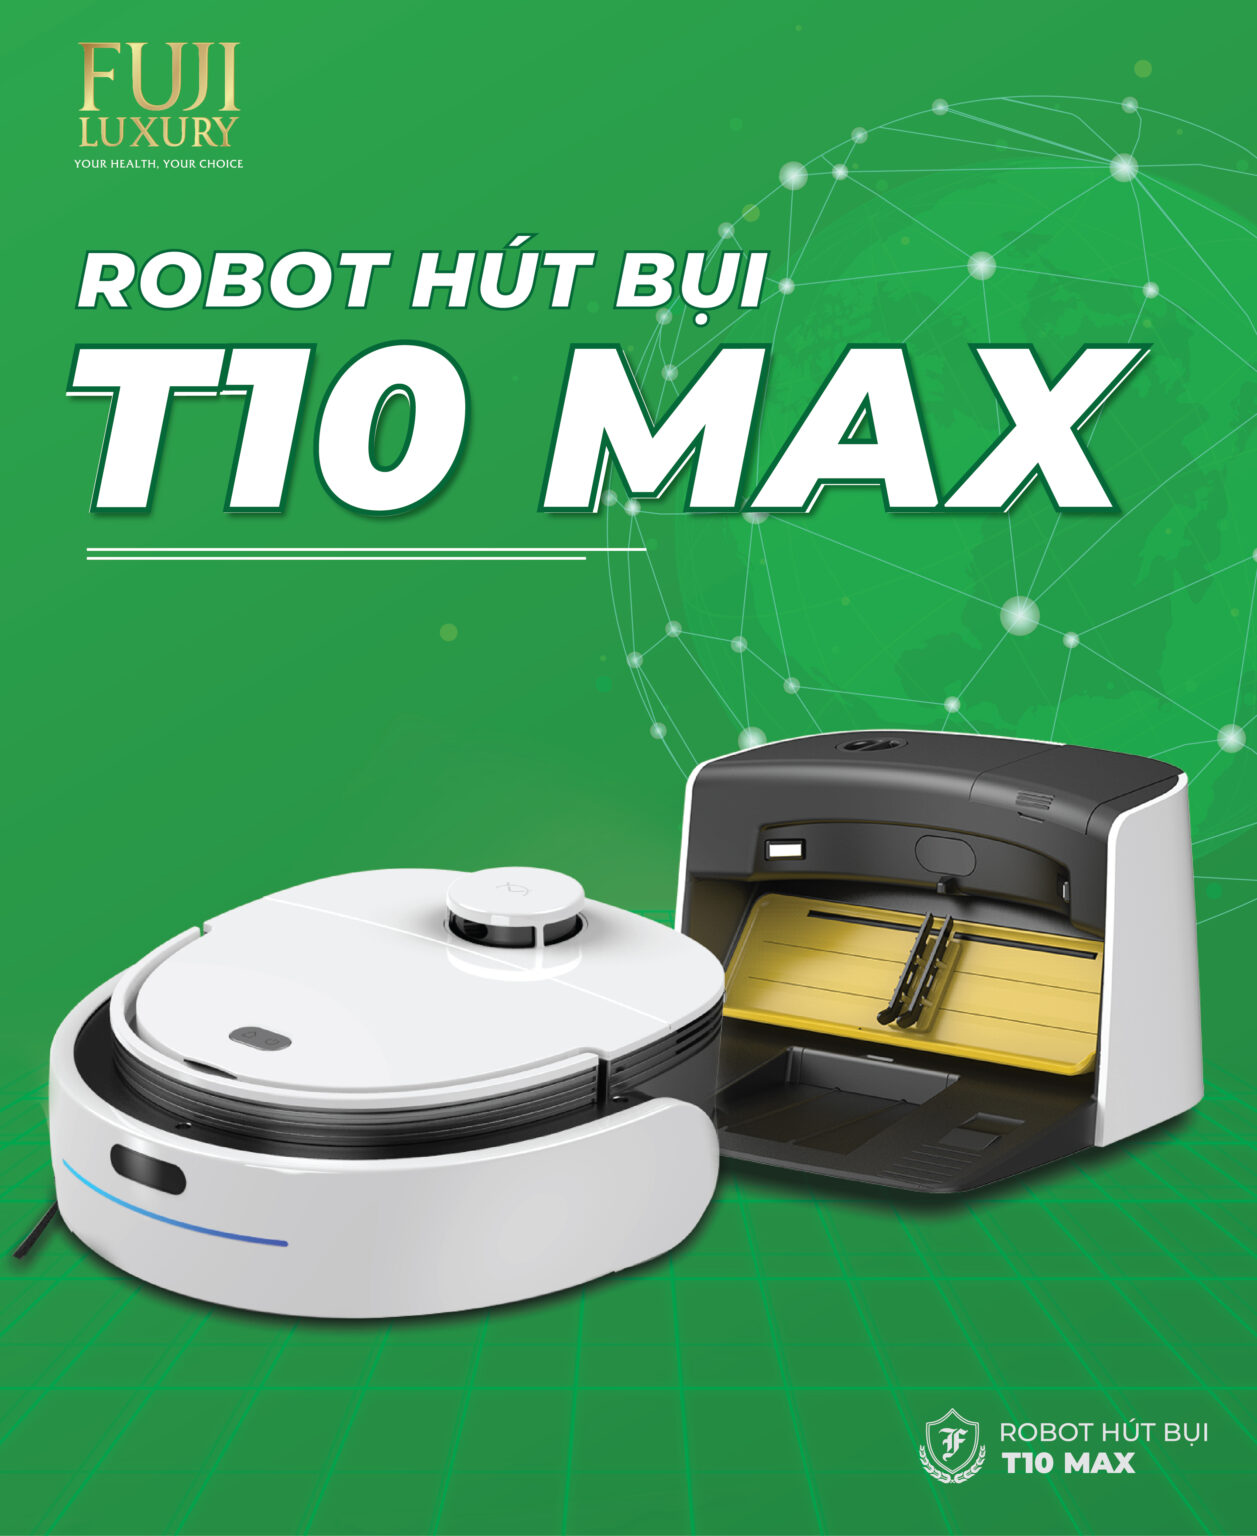 ROBOT HÚT BỤI T10 MAX